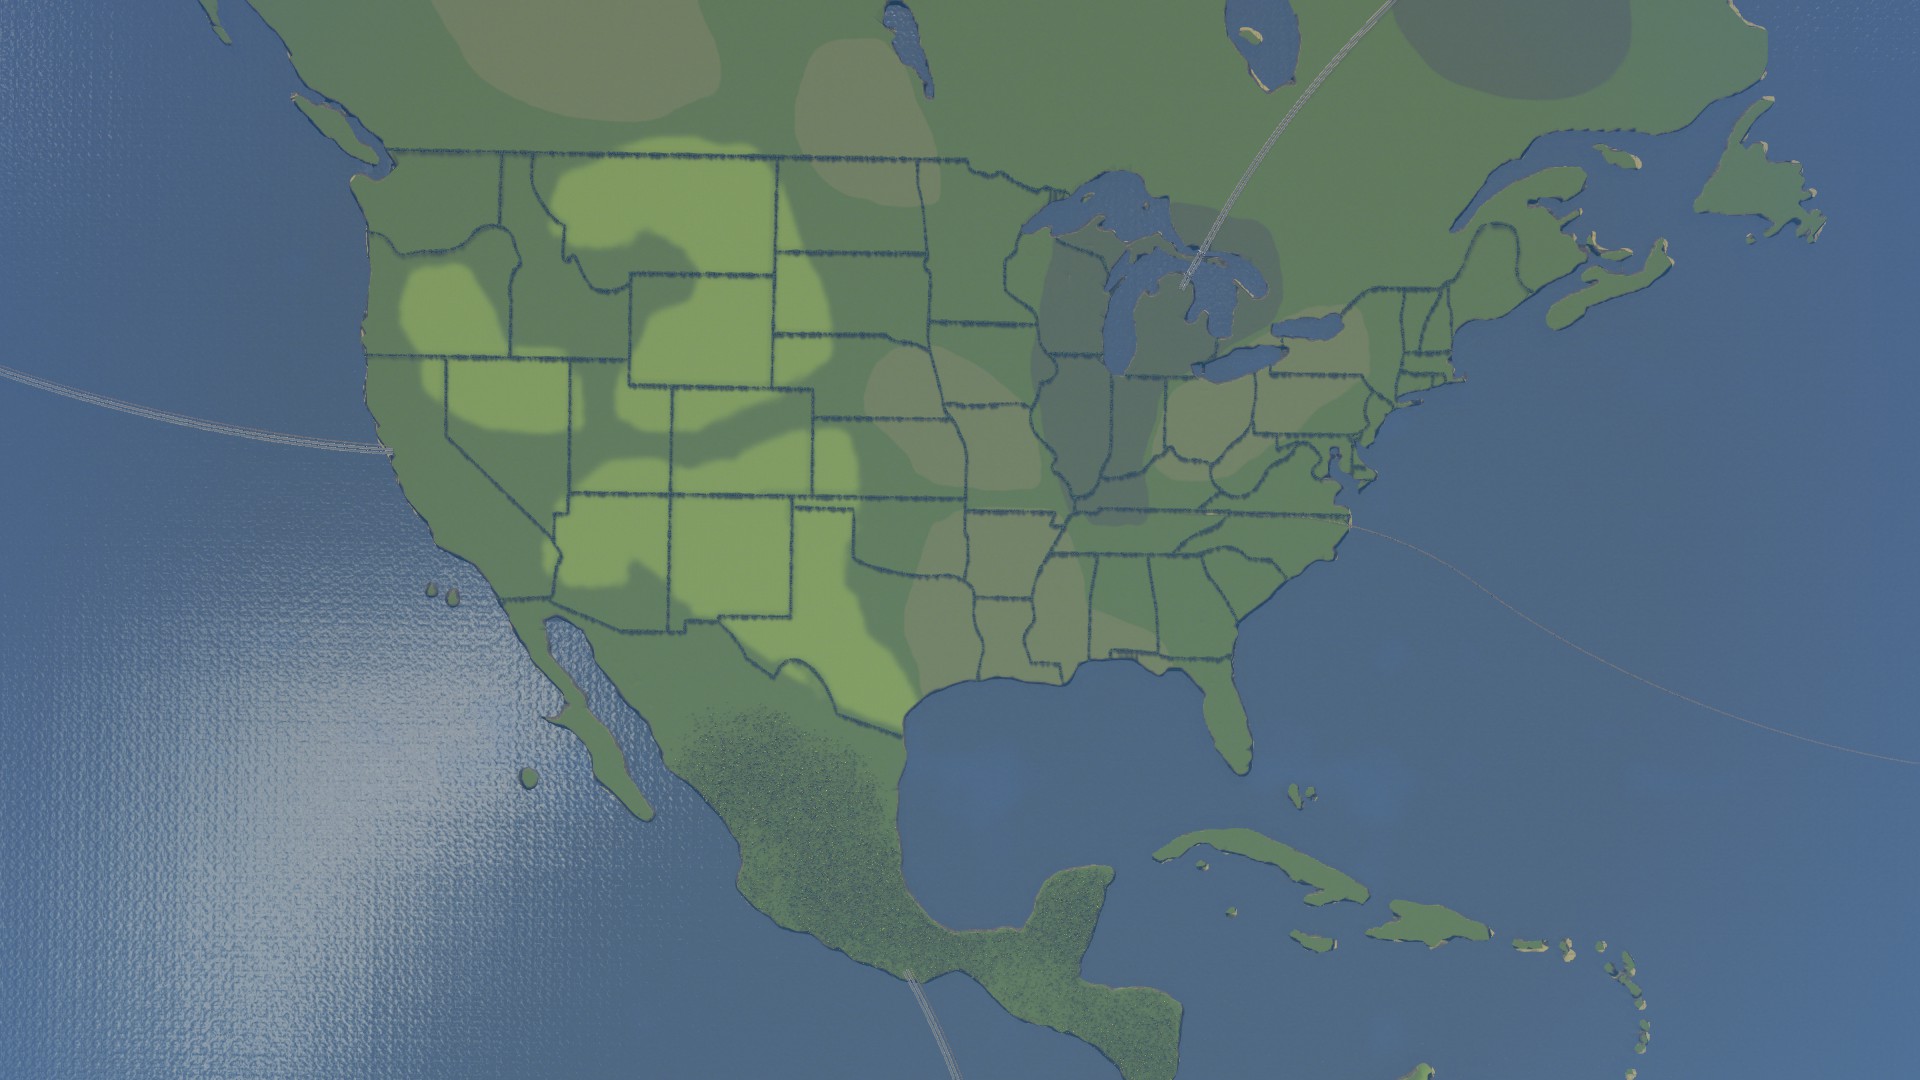 Karte der USA erstellt im Map Editor von Cities: Skylines.